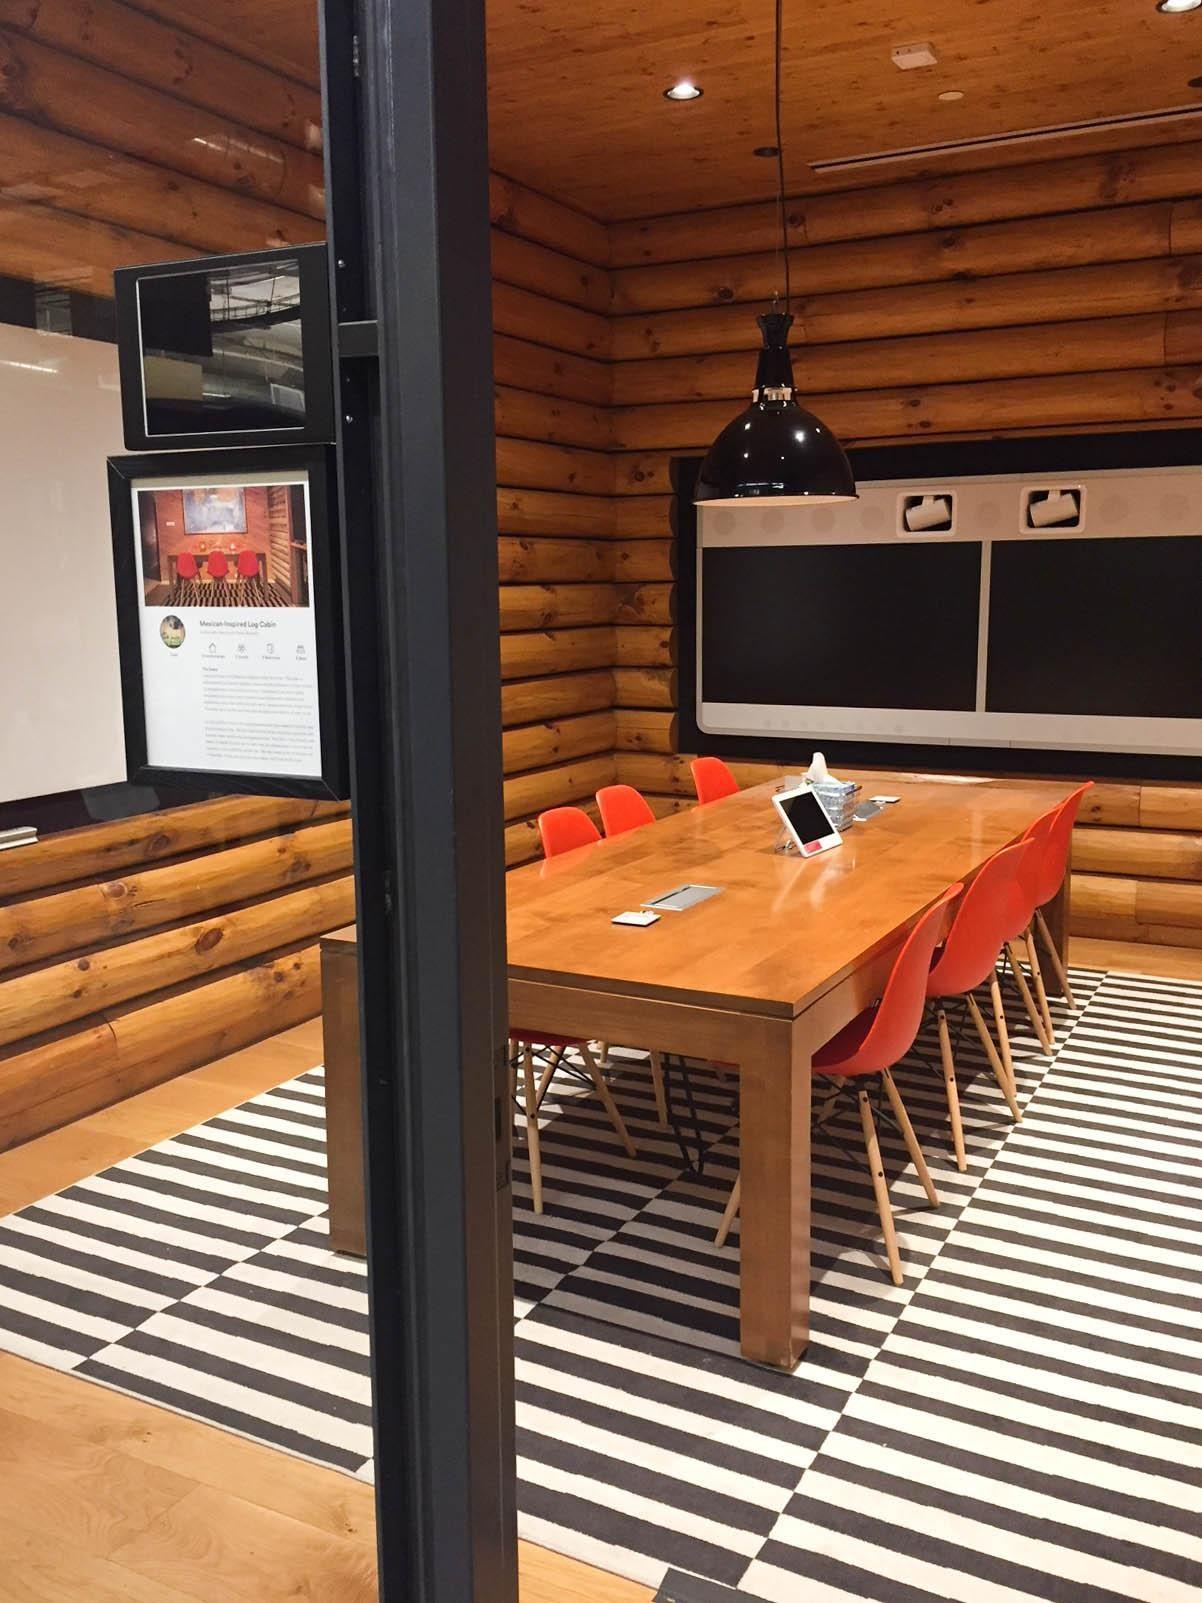 Zu Besuch bei #airbnb in San Francicso. Die #Konferenzräume sind echten Airbnbs nachempfunden.
